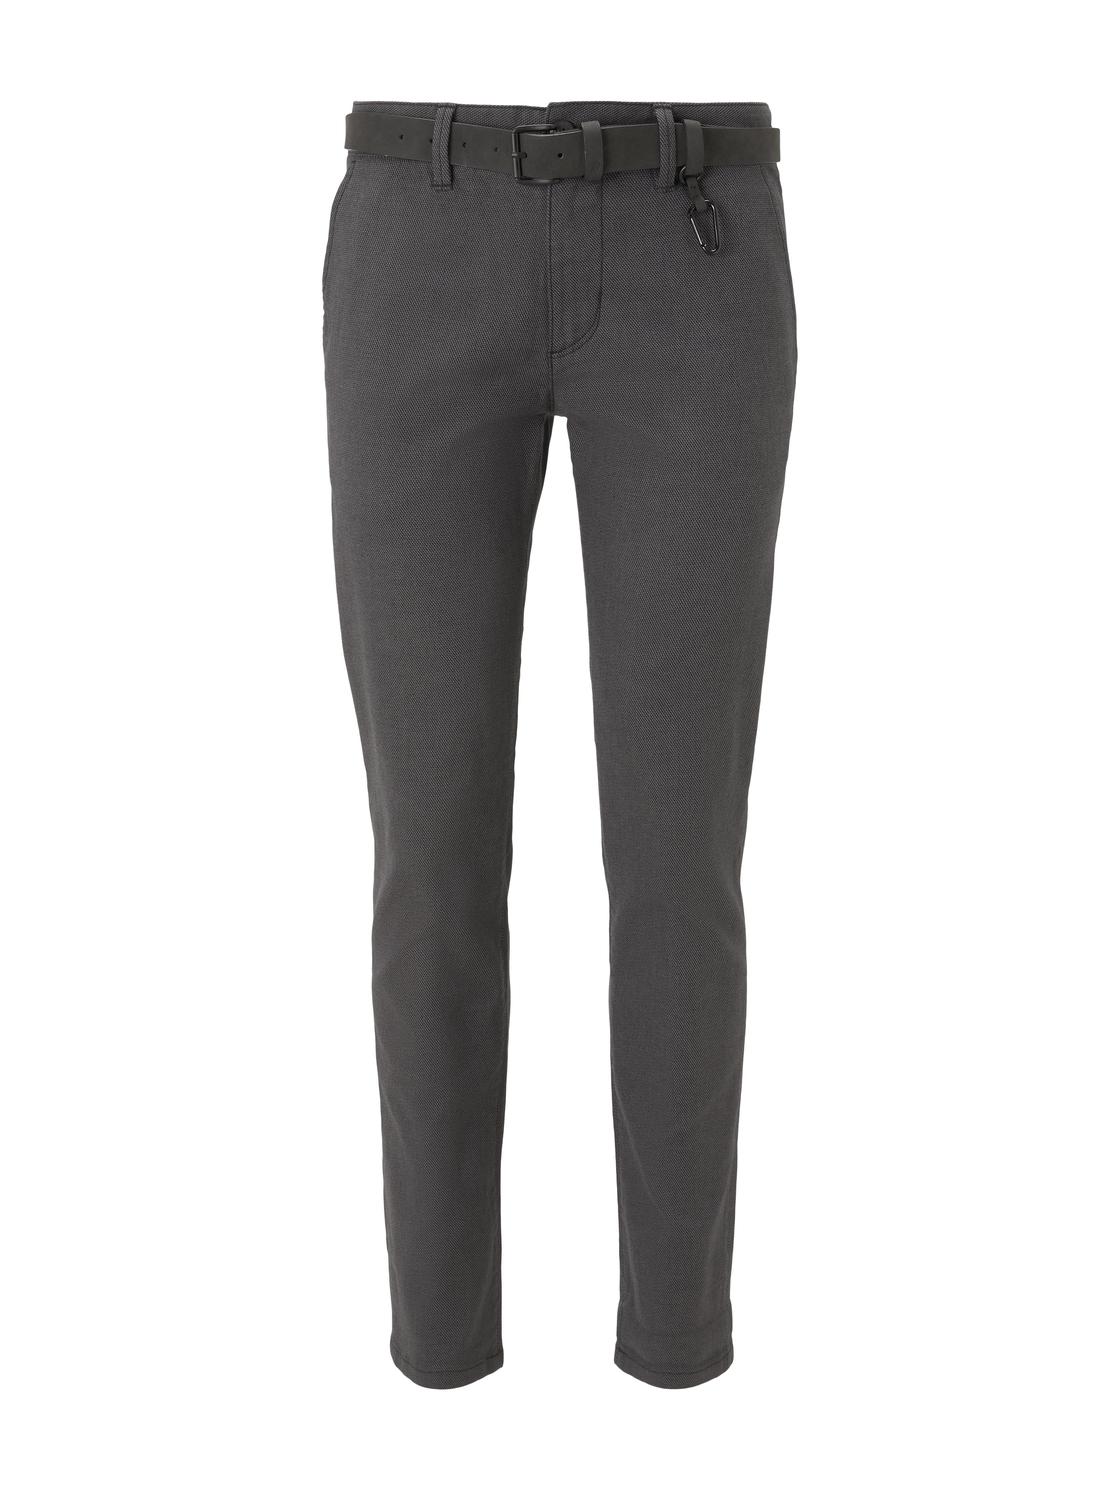 Тканевые брюки TOM TAILOR Denim Stoff/Chino Chino mit Gürtel regular/straight, серый худи tom tailor размер xl серый